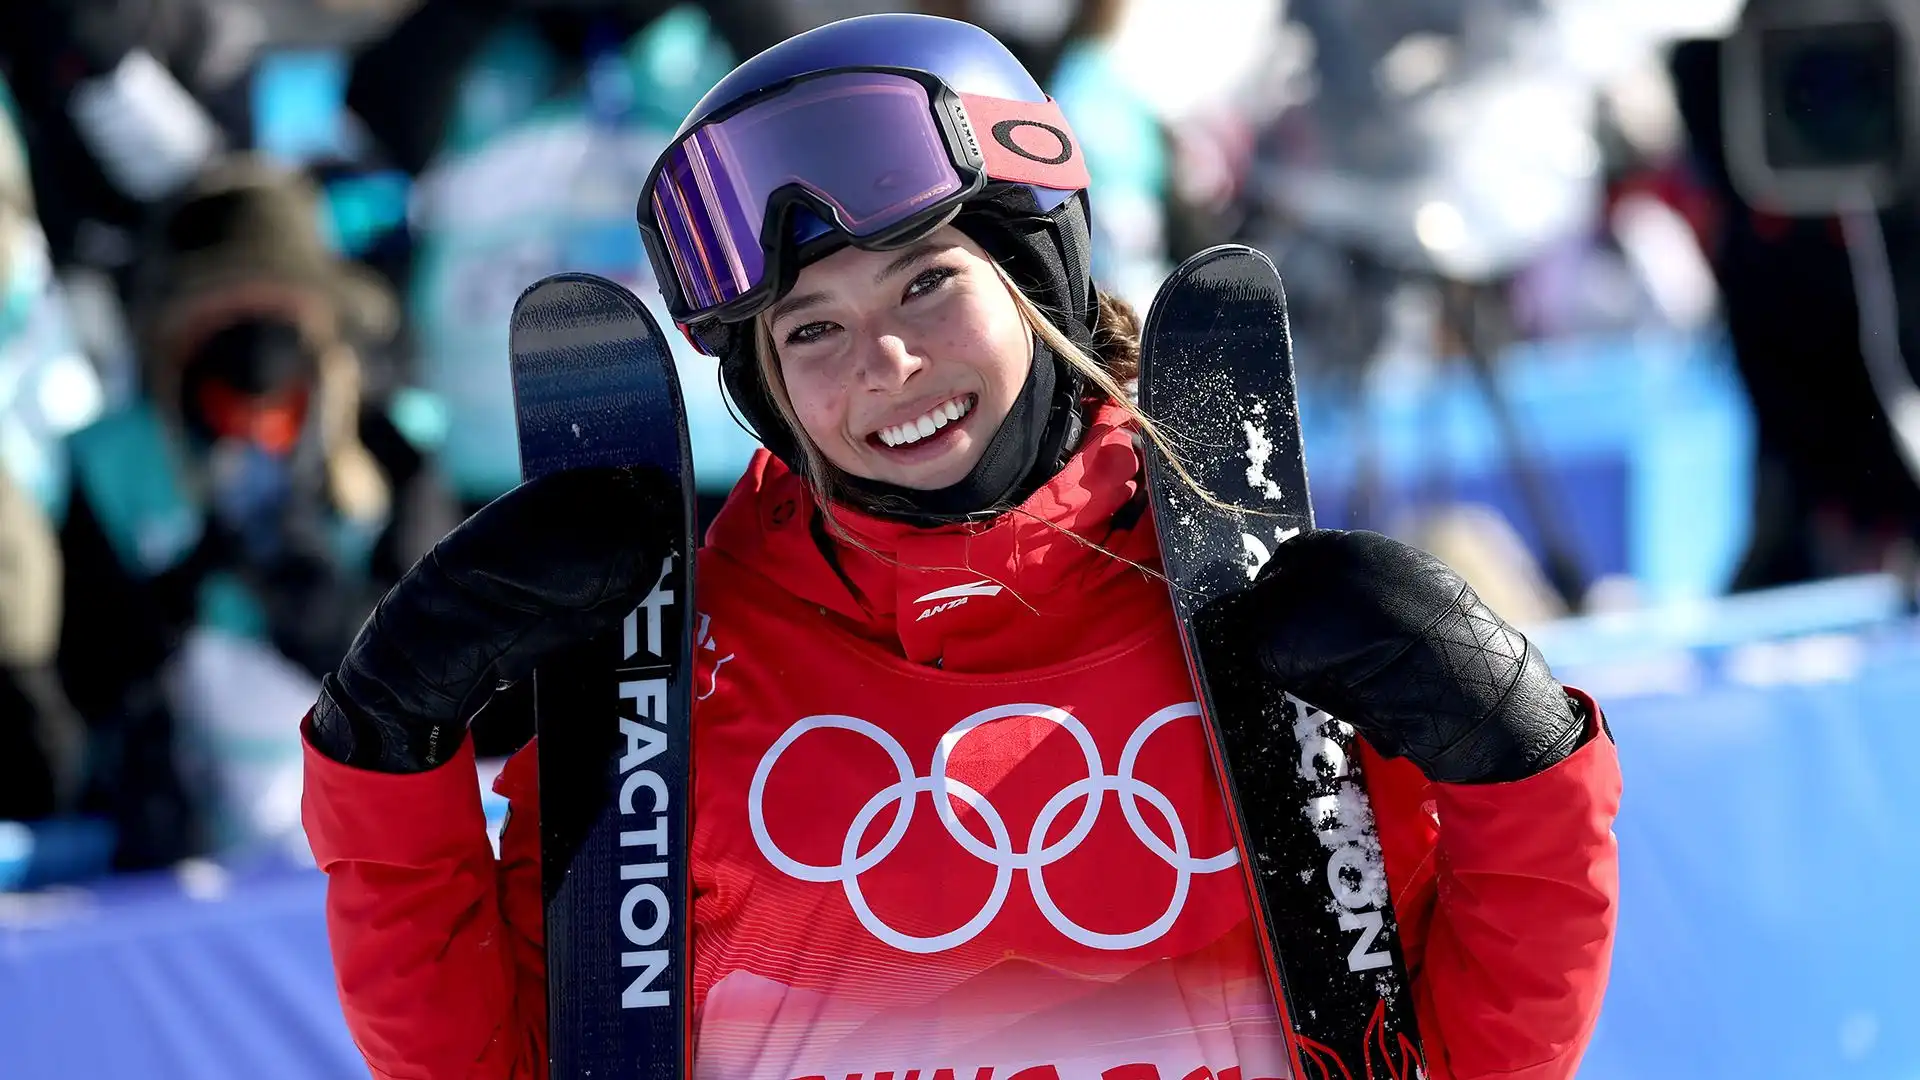 Eileen Gu (Sci): la sciatrice freestyle statunitense naturalizzata cinese ha accumulato 22 milioni di dollari di sponsorizzazioni